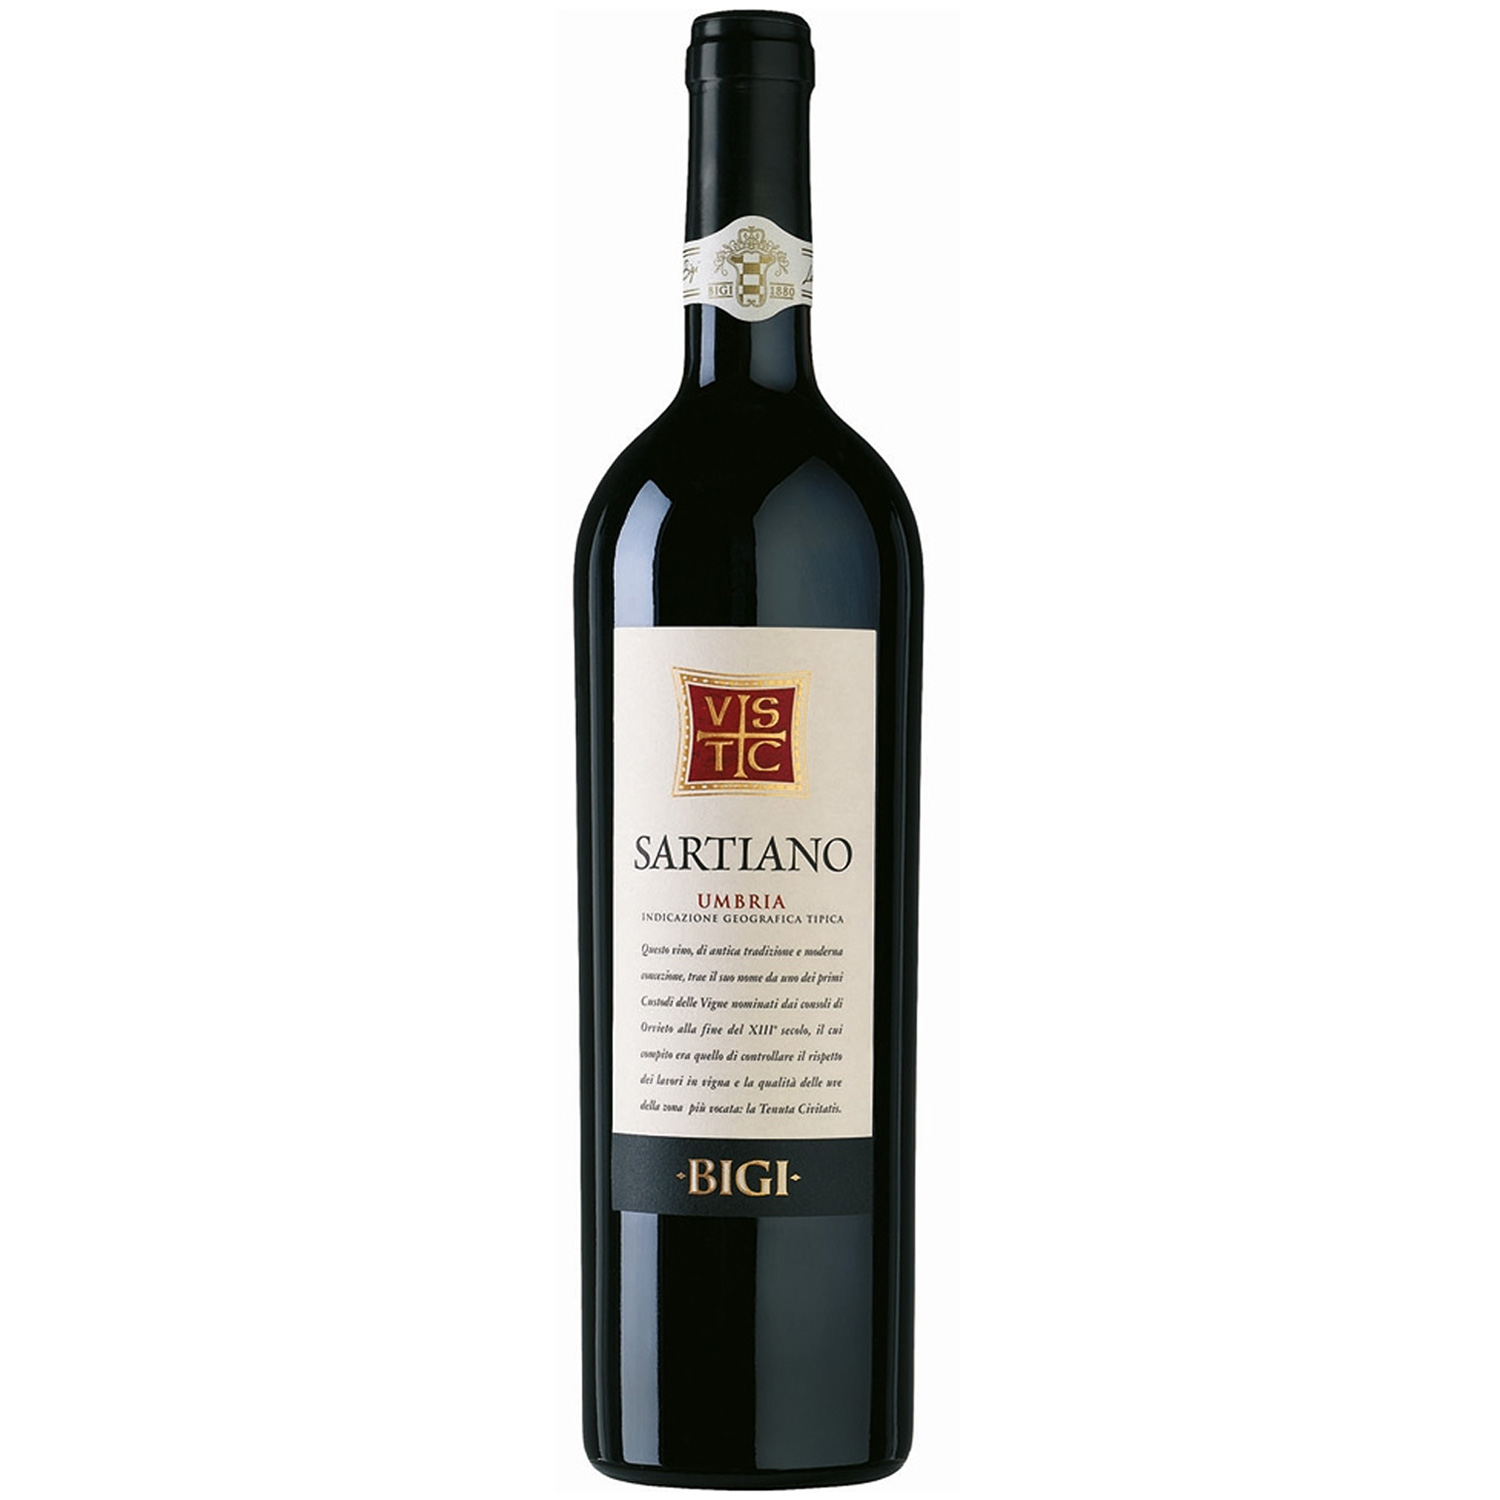 Italienischer Rotwein Sartiano 2017 bei Umbria online hier Nobile IGT Vinum BIGI